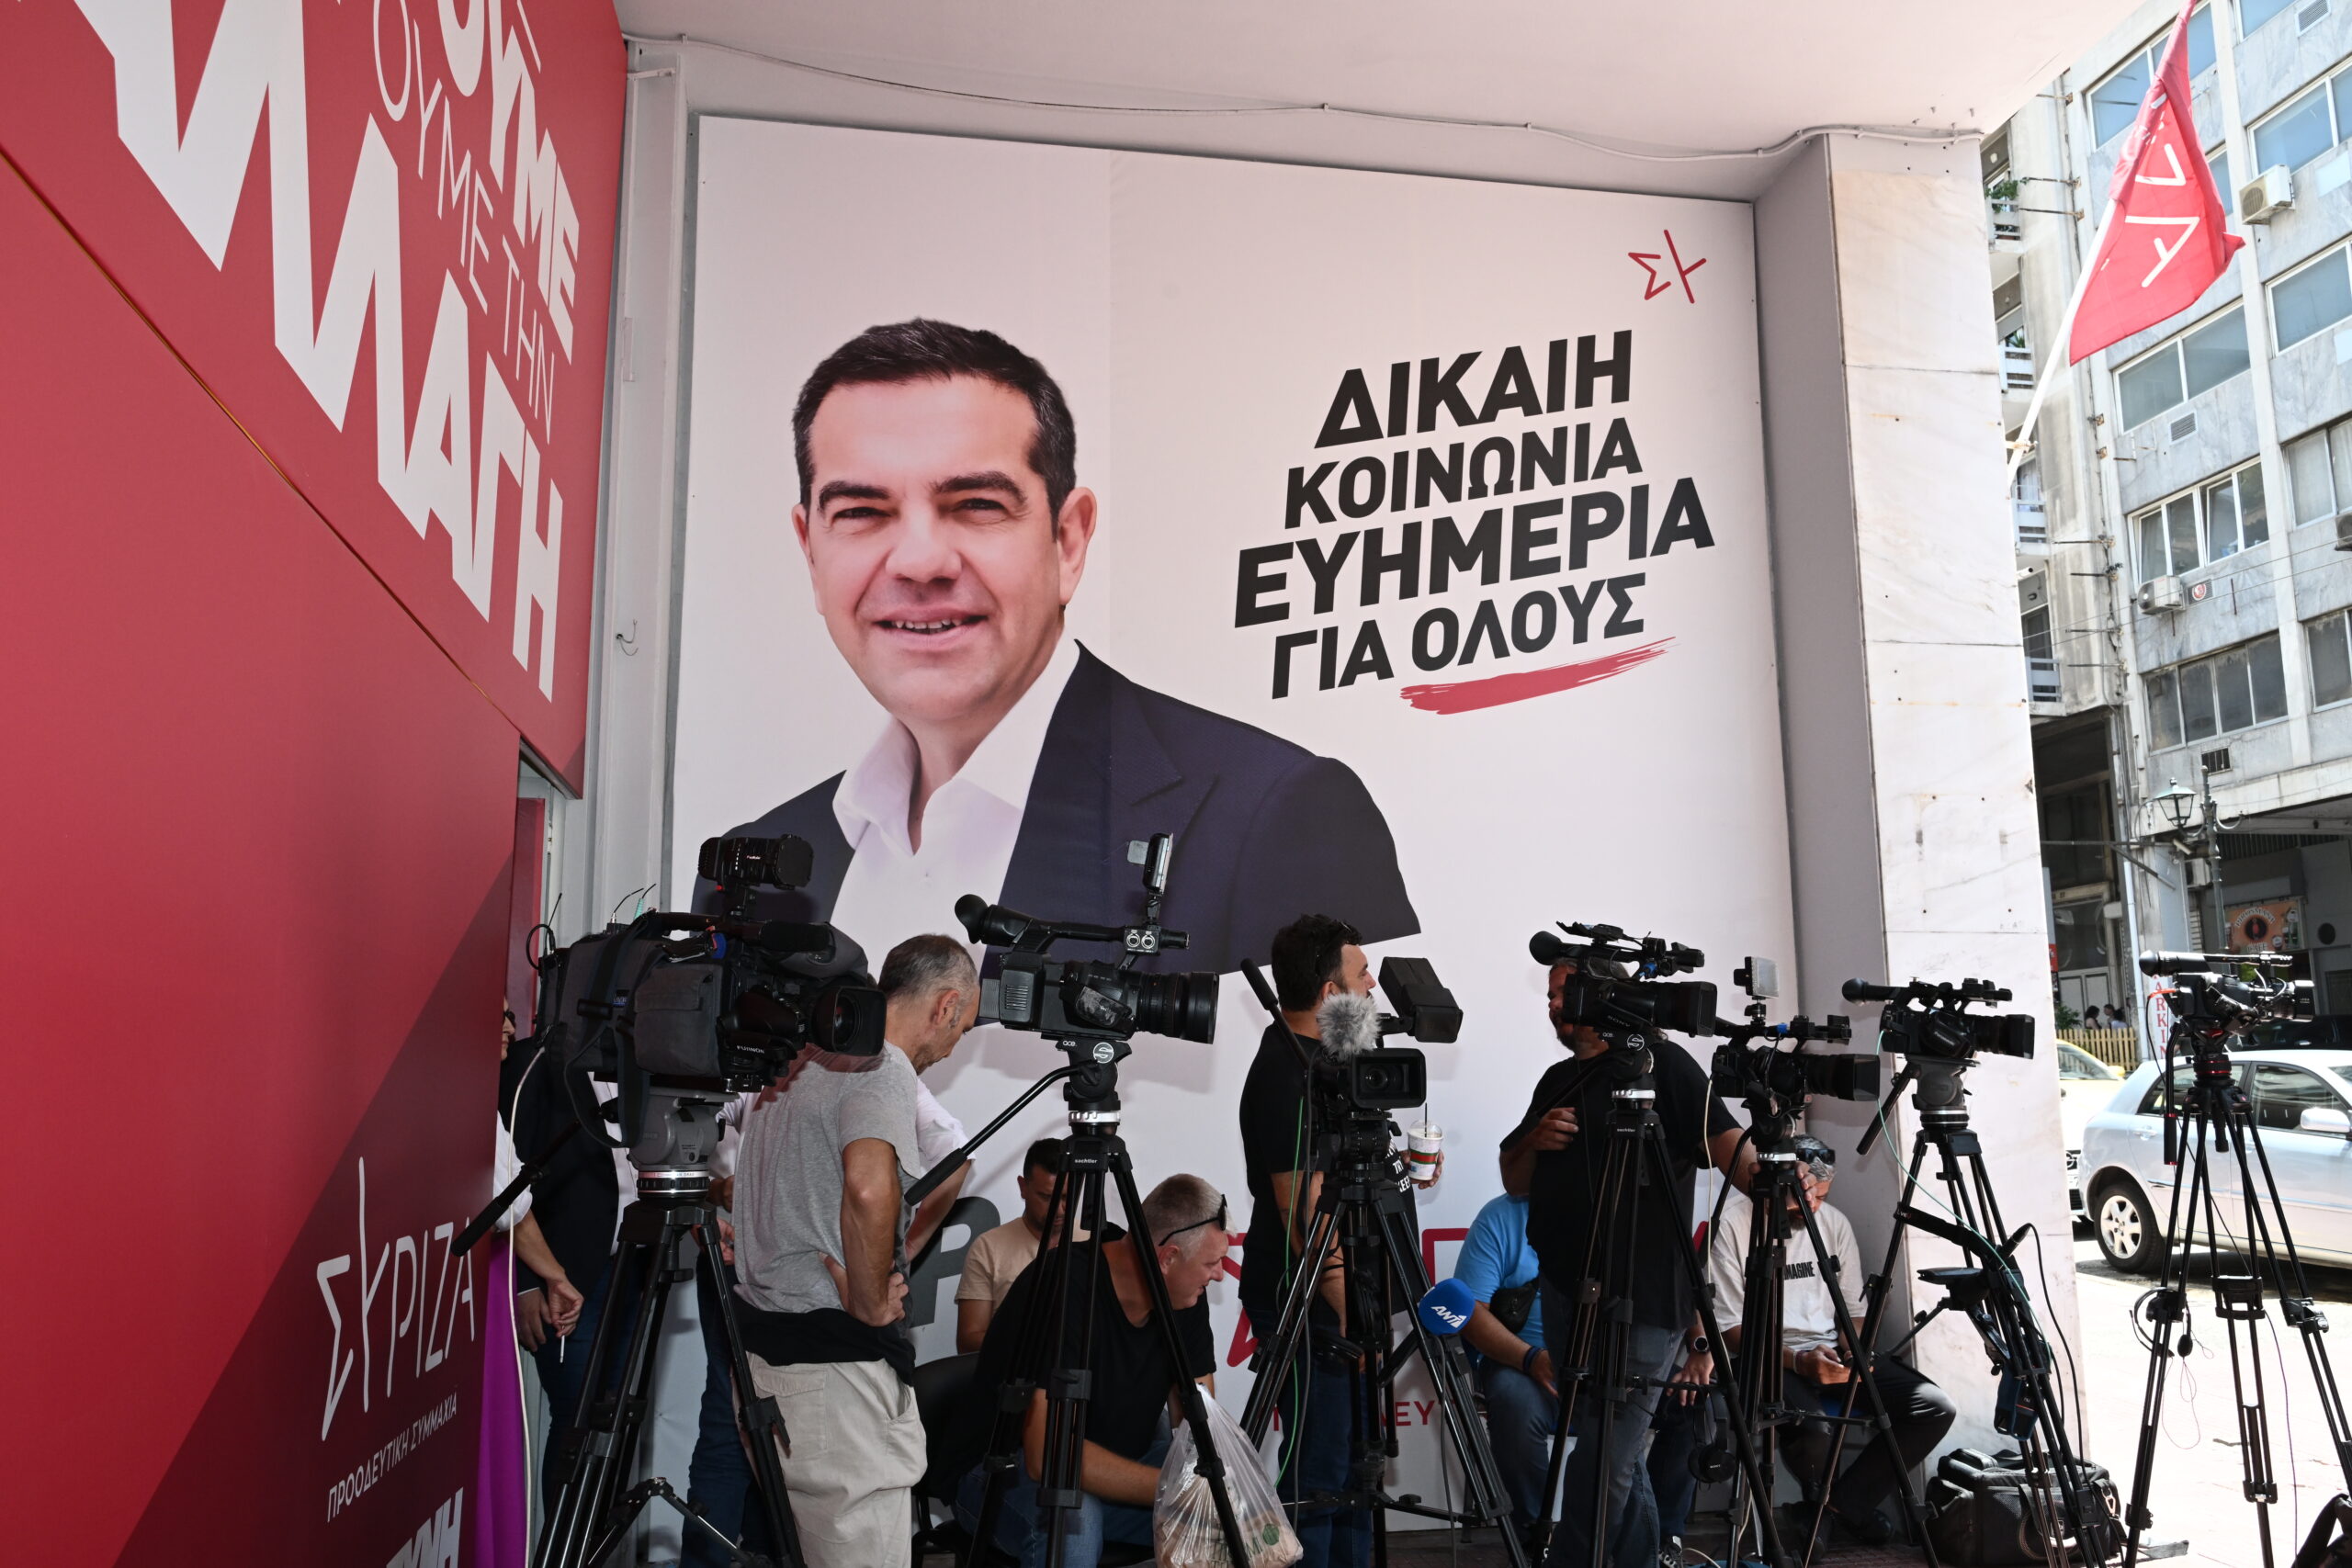 ΣΥΡΙΖΑ: Προτάθηκε για πρόεδρος της ΚΟ ο Σωκράτης Φάμελος – Σε εξέλιξη η συνεδρίαση της Πολιτικής Γραμματείας